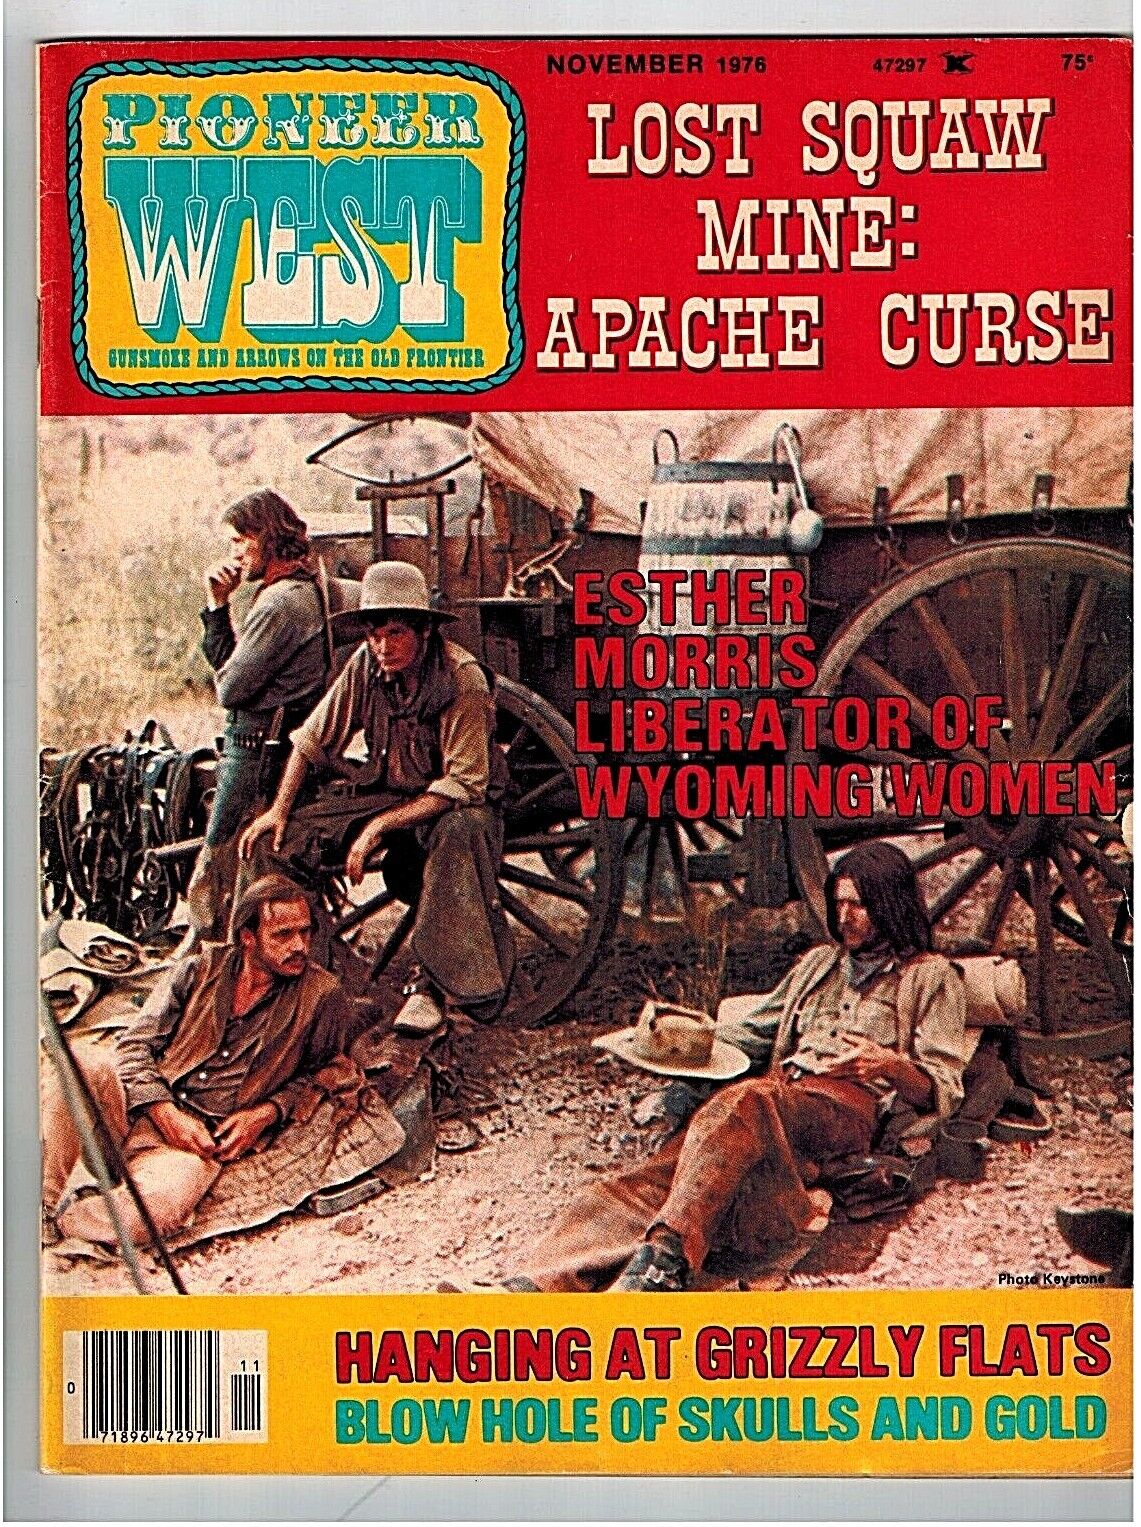 Pioneer West Pulp Magazine, Nov of 1976 Nice Condition